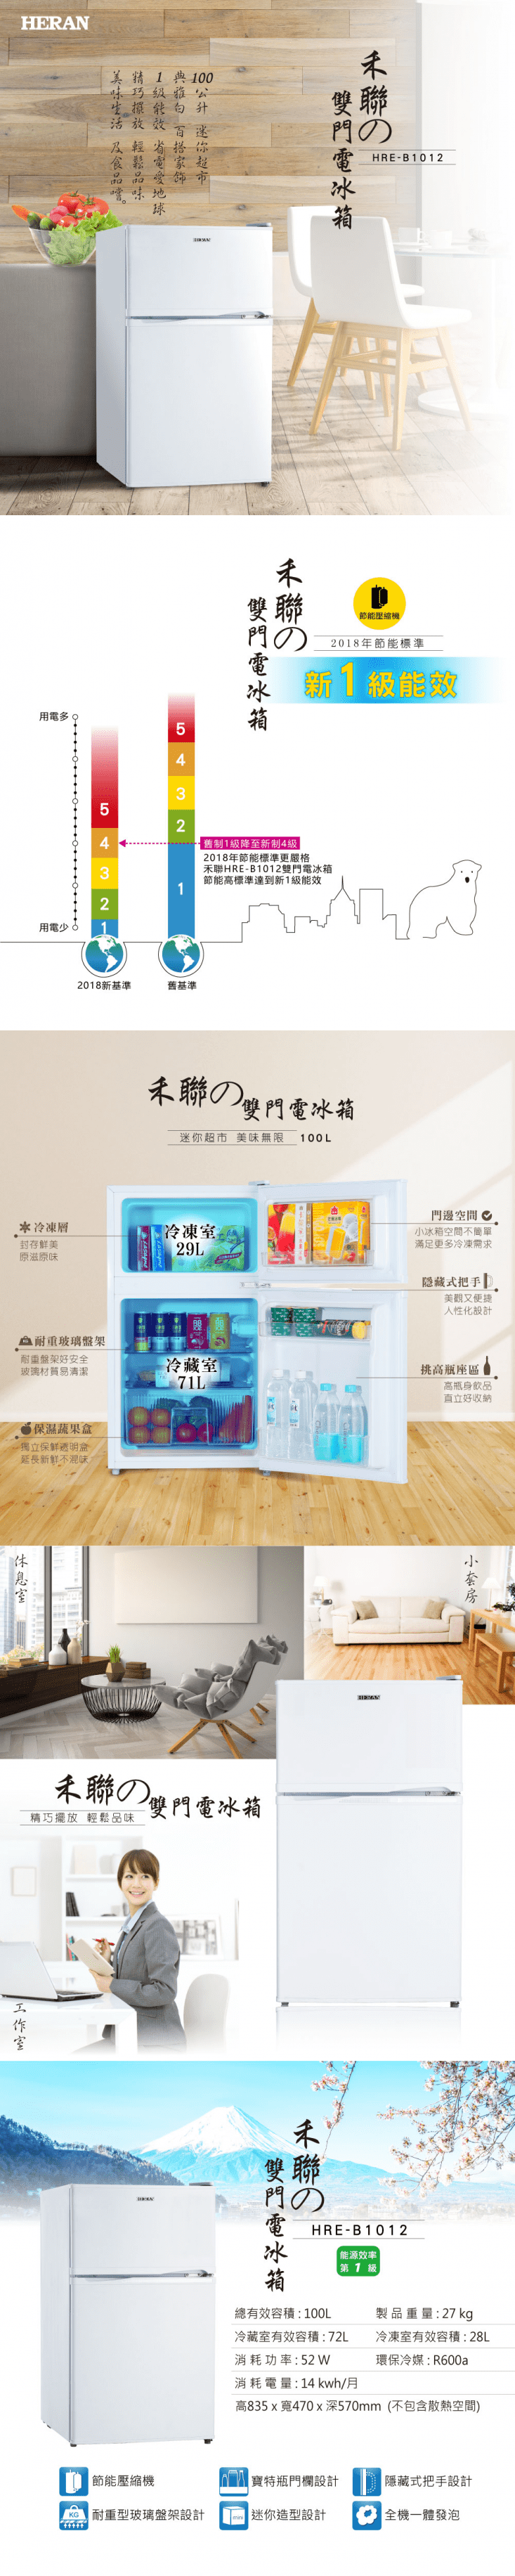 【HERAN 禾聯】100L雙門電冰箱(HRE-B1013) 冰櫃/冷藏櫃